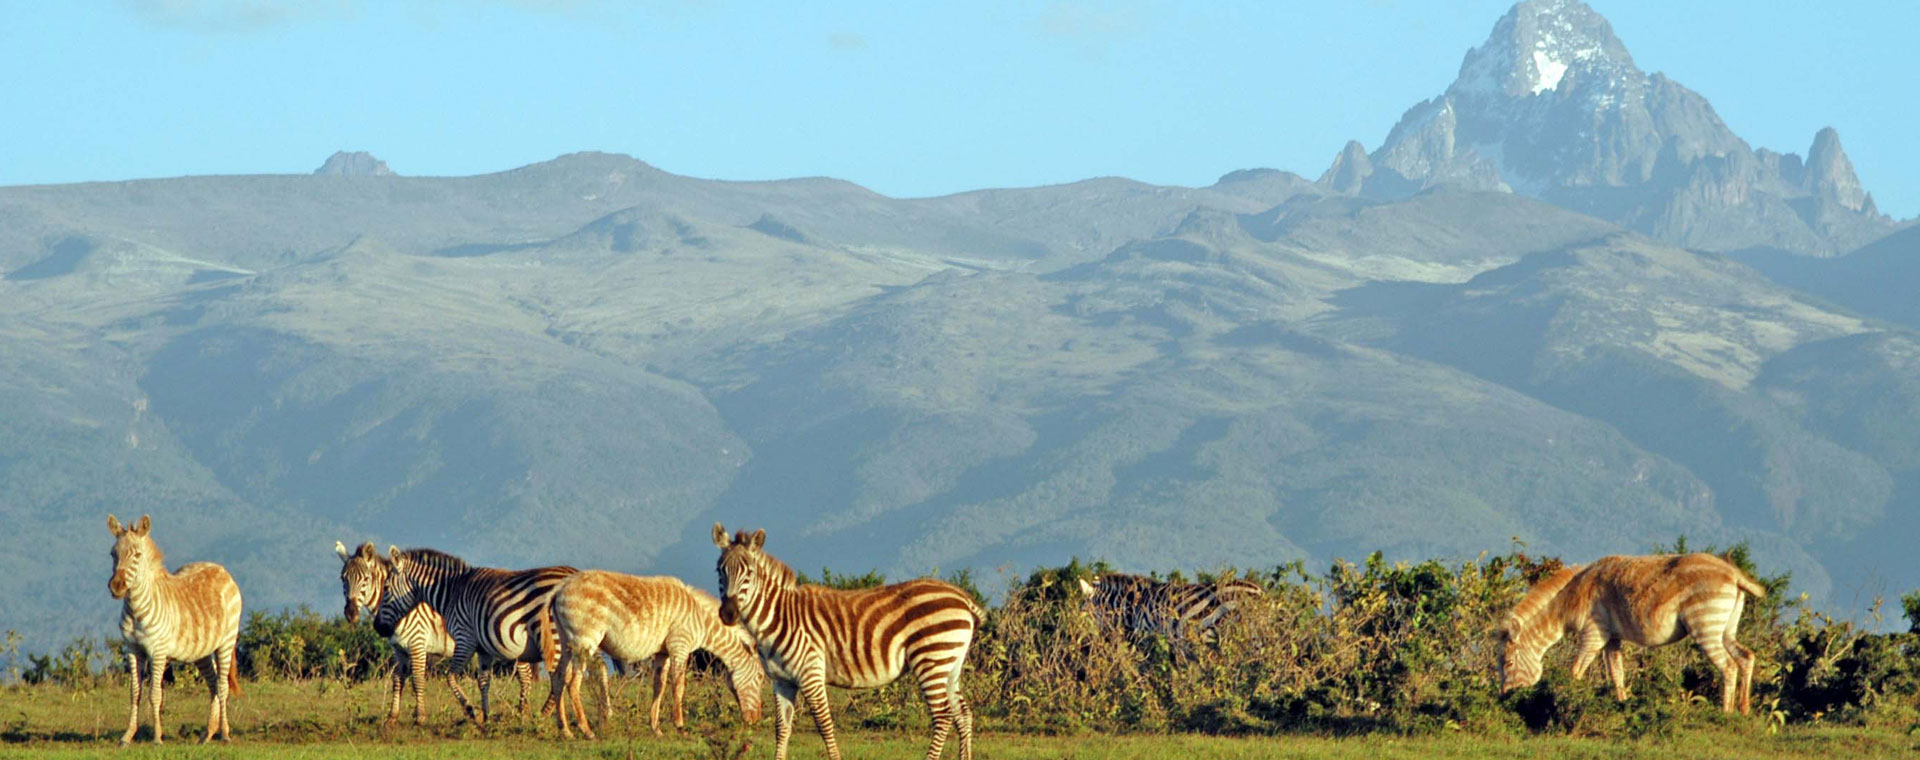 Mt Kenya National Park 